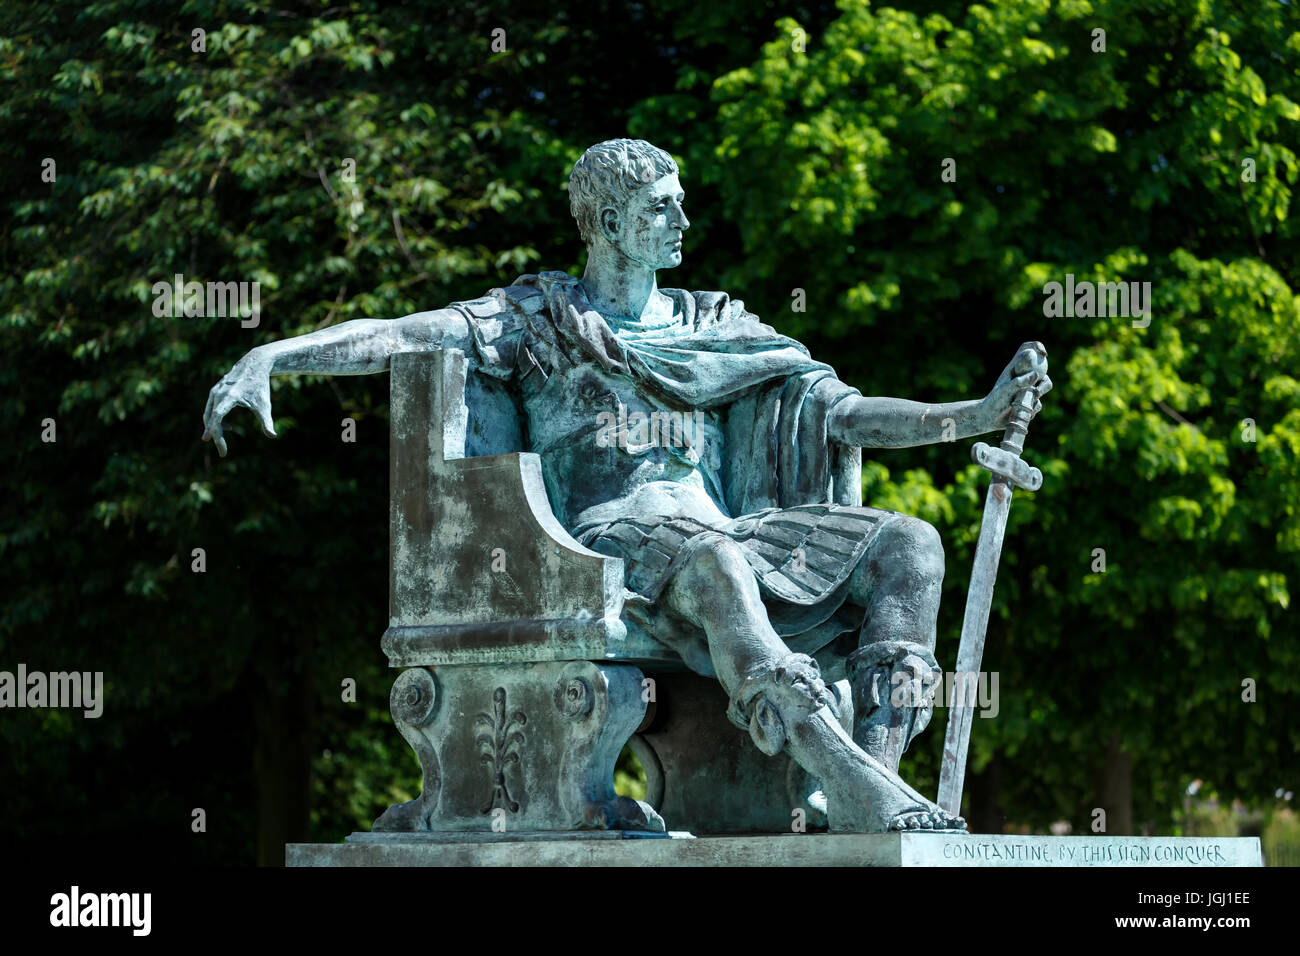 Statue de Constantin le Grand (Philip Jackson, artiste), York, Yorkshire, Angleterre, Royaume-Uni Banque D'Images